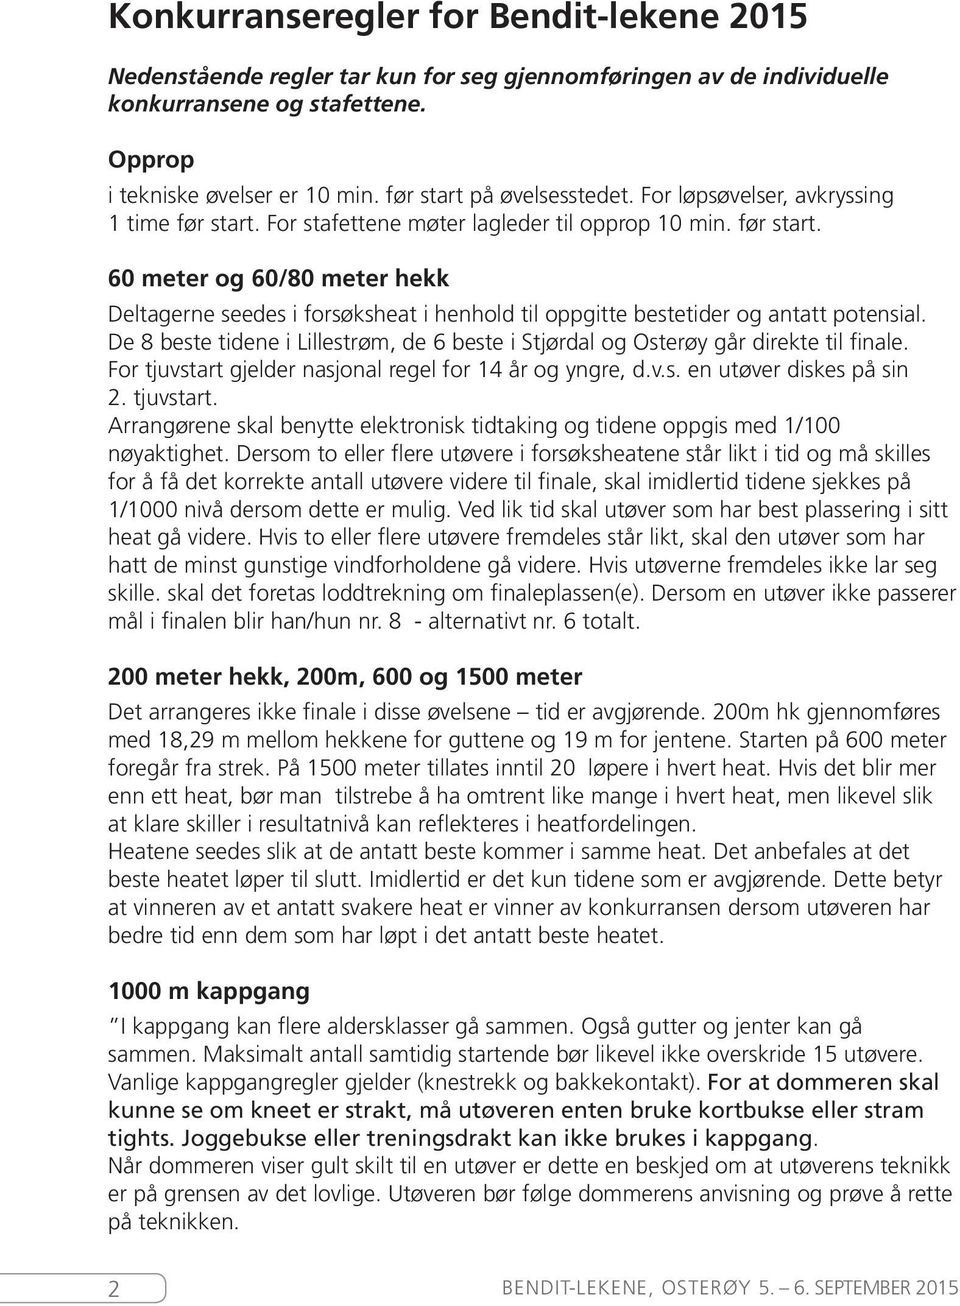 De 8 beste tidene i Lillestrøm, de 6 beste i Stjørdal og Osterøy går direkte til finale. For tjuvstart gjelder nasjonal regel for 14 år og yngre, d.v.s. en utøver diskes på sin 2. tjuvstart. Arrangørene skal benytte elektronisk tidtaking og tidene oppgis med 1/100 nøyaktighet.